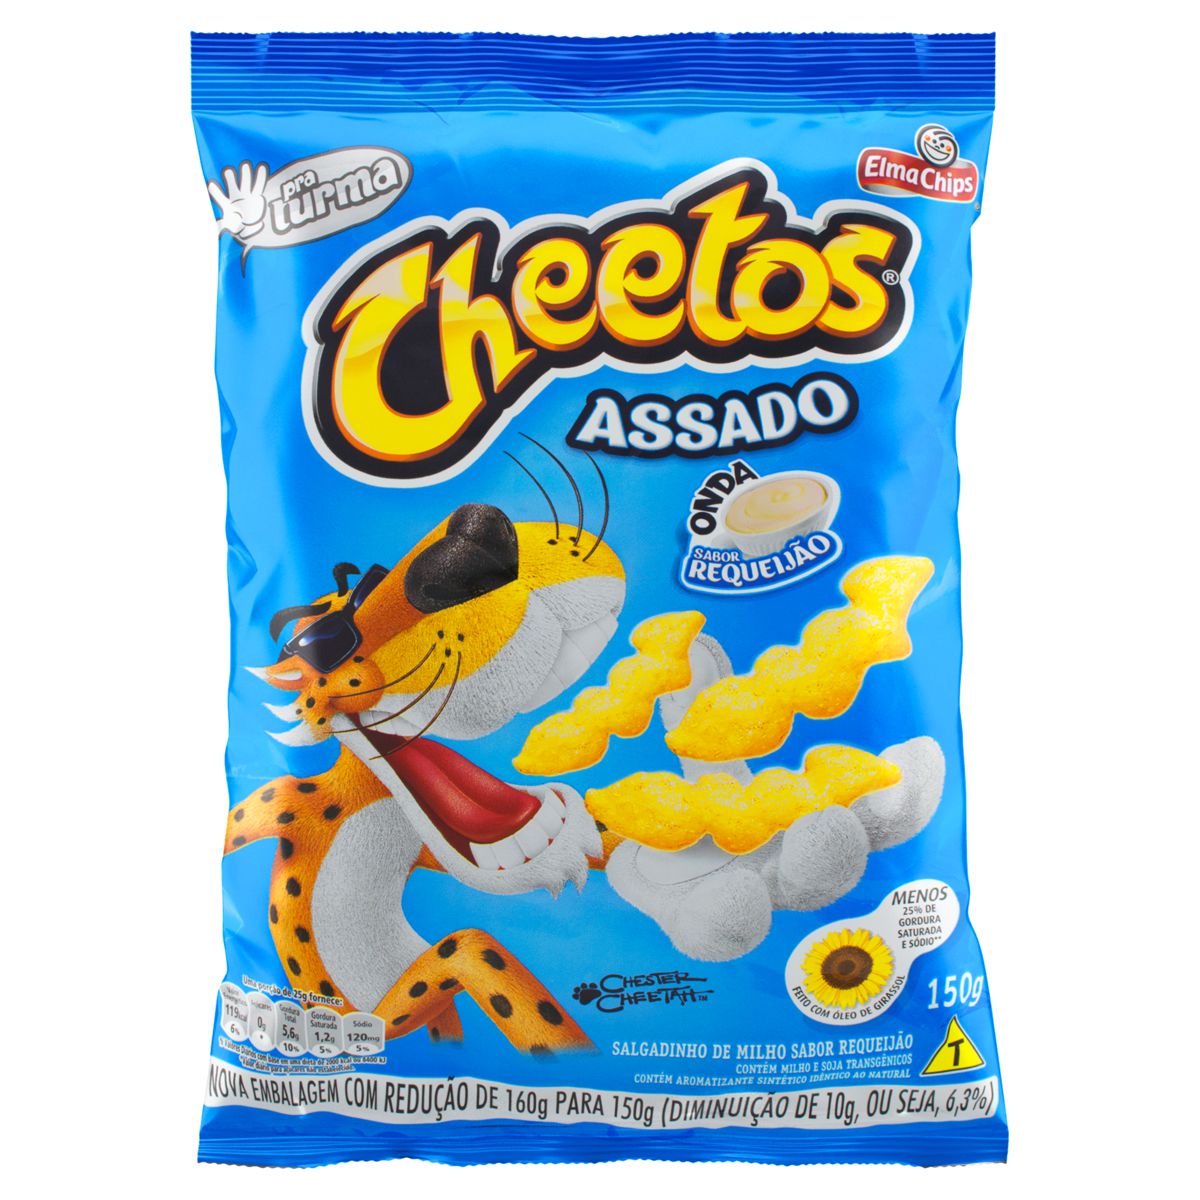 Cheetos requeijão - Reviews de salgadinhos e coisas mais